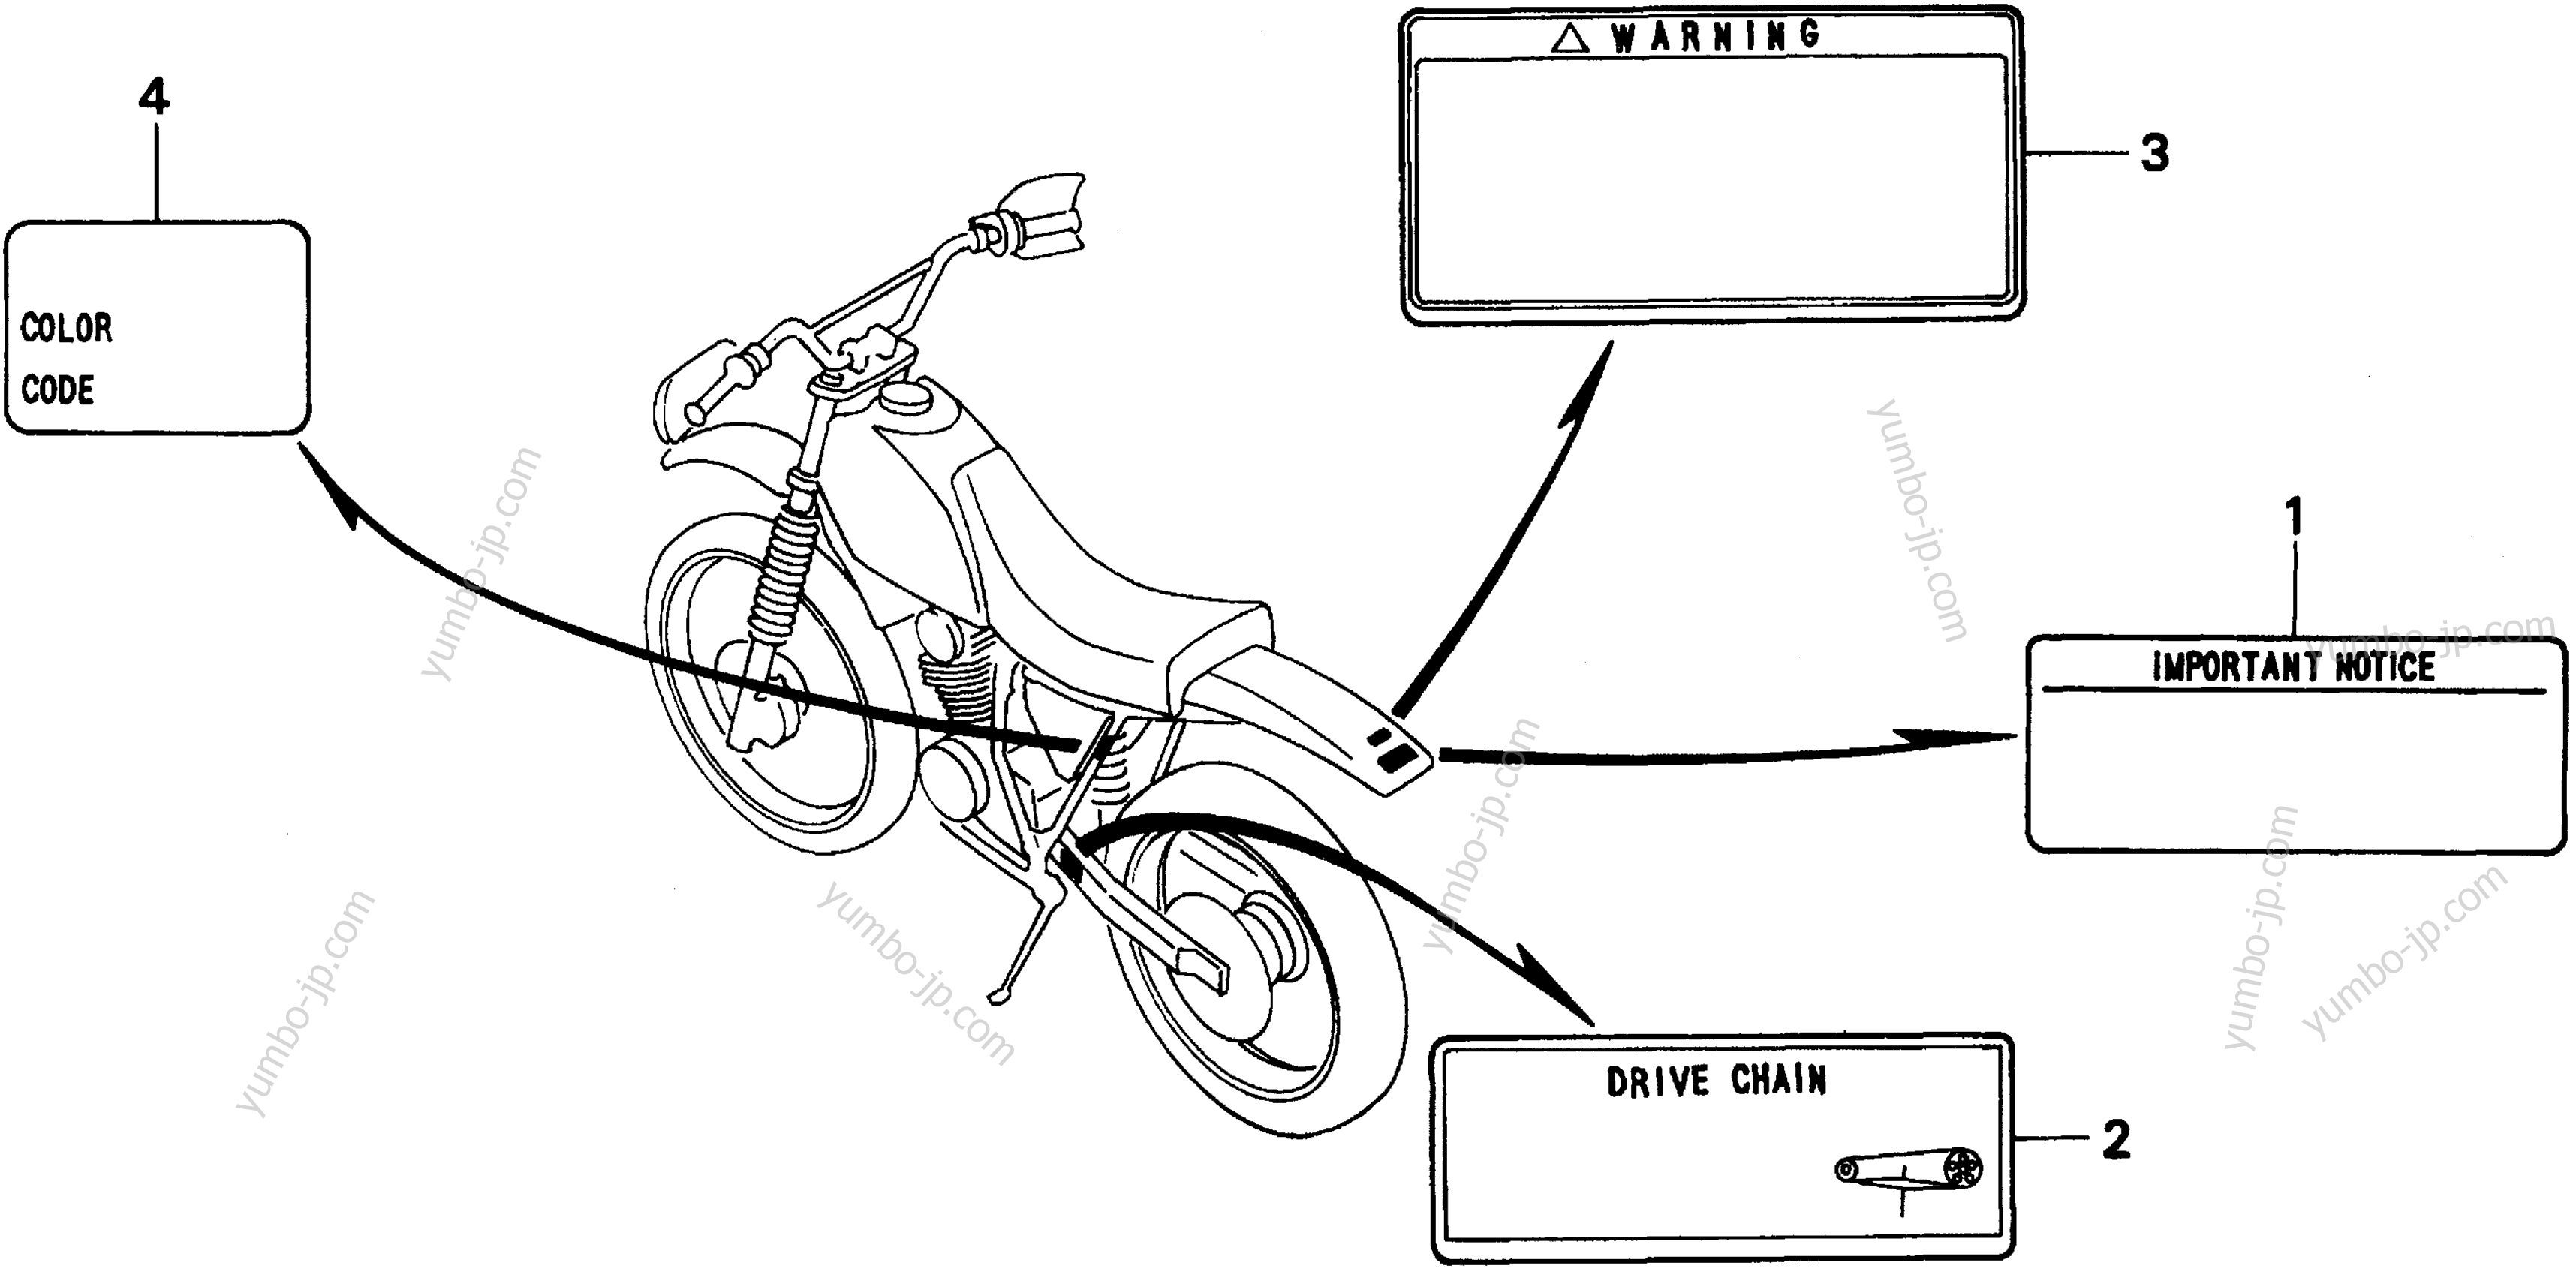 CAUTION LABELS для мотоциклов HONDA XR200R A 2001 г.